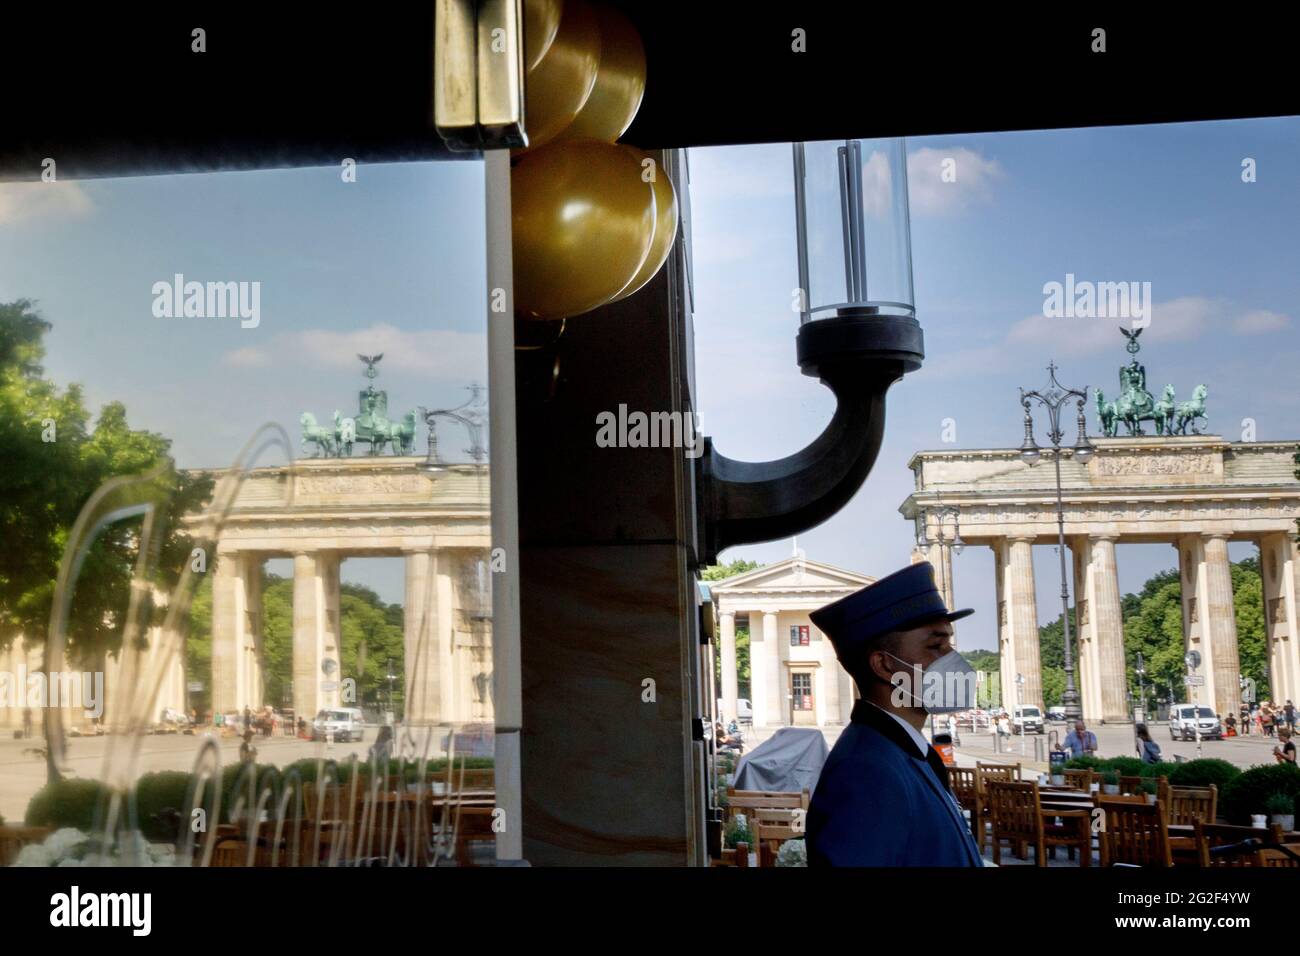 Berlín, Alemania. 11th de junio de 2021. Hay un botones bajo globos dorados  frente a la entrada del hotel del Hotel Adlon Kempinski en Pariser Platz,  cerca de la Puerta de Brandenburgo.